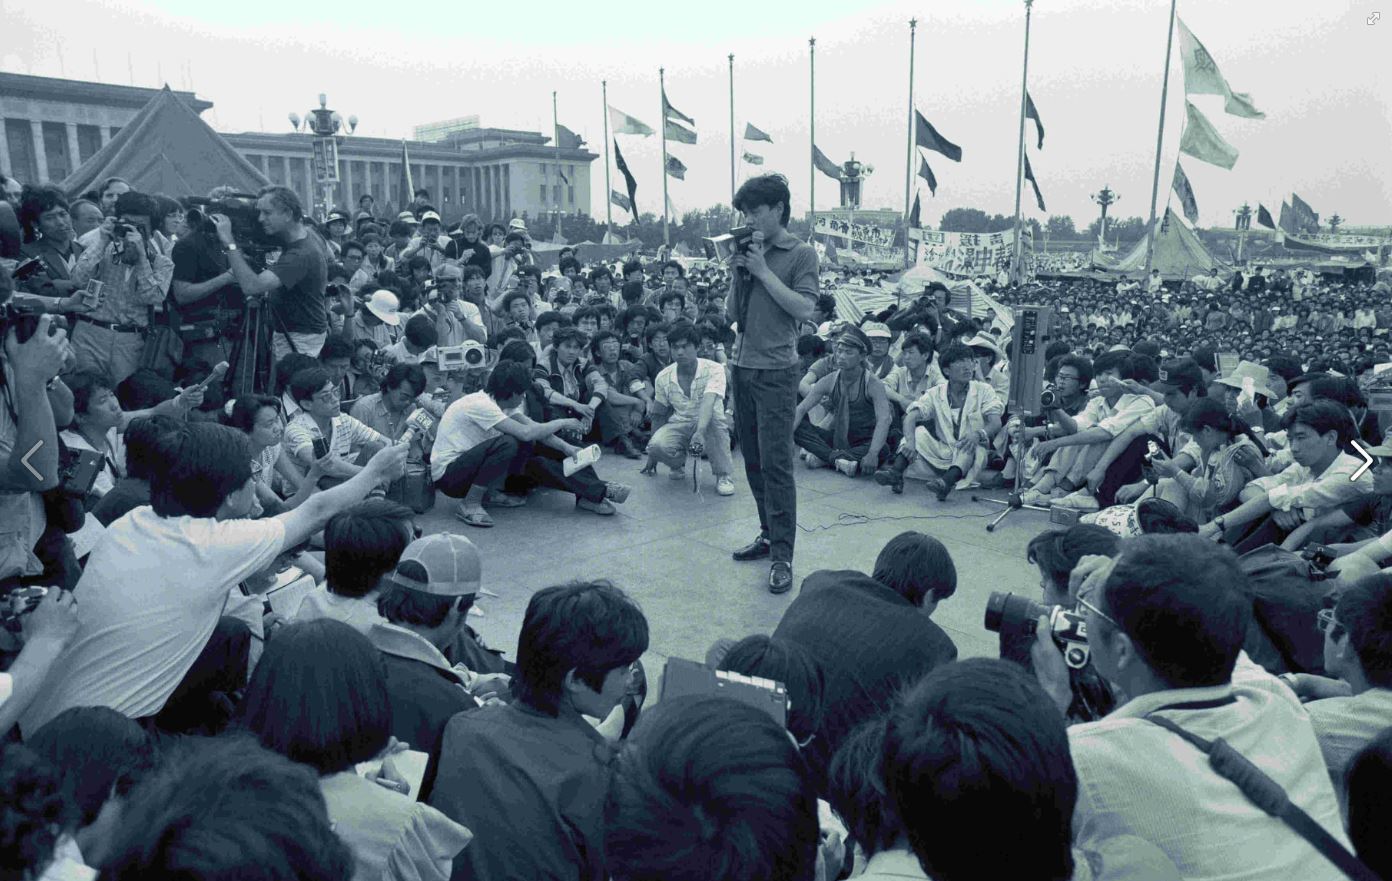 Kundgebung eines Regimekritikers auf dem Tiananmen-Platz kurz vor dem Massaker am 4. Juni 1989. (c) Bundesstiftung Aufarbeitung/Harald Schmitt.